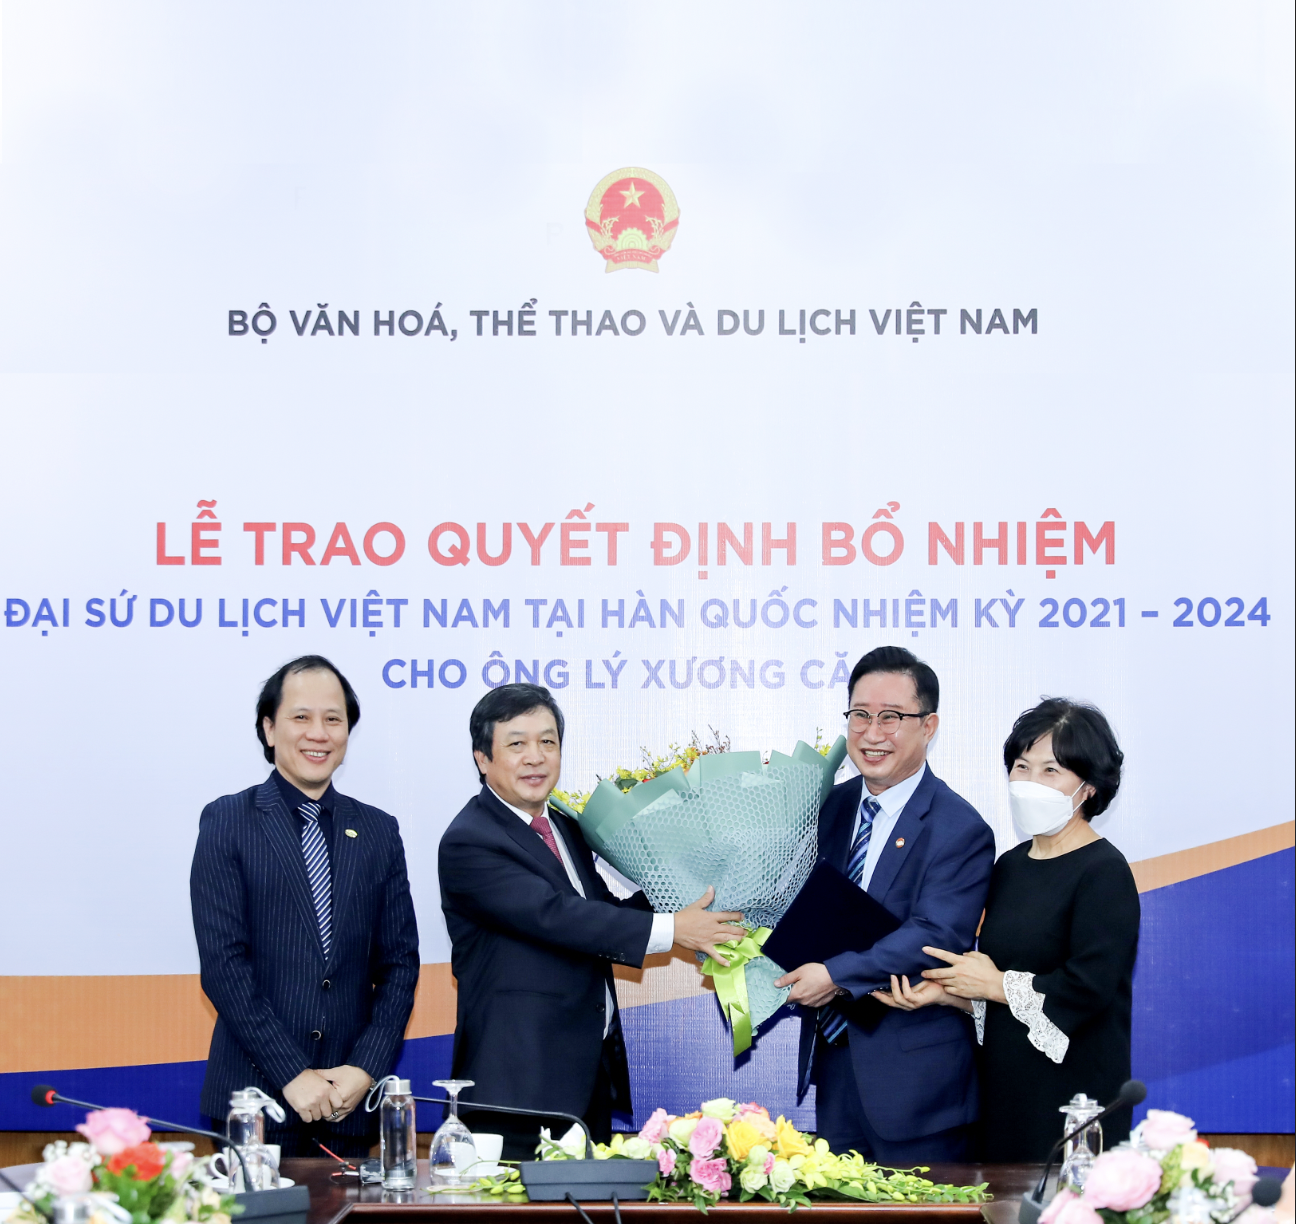 Lễ trao Quyết định bổ nhiệm Ông Lý Xương Căn là Đại sứ du lịch Việt Nam  tại Hàn Quốc